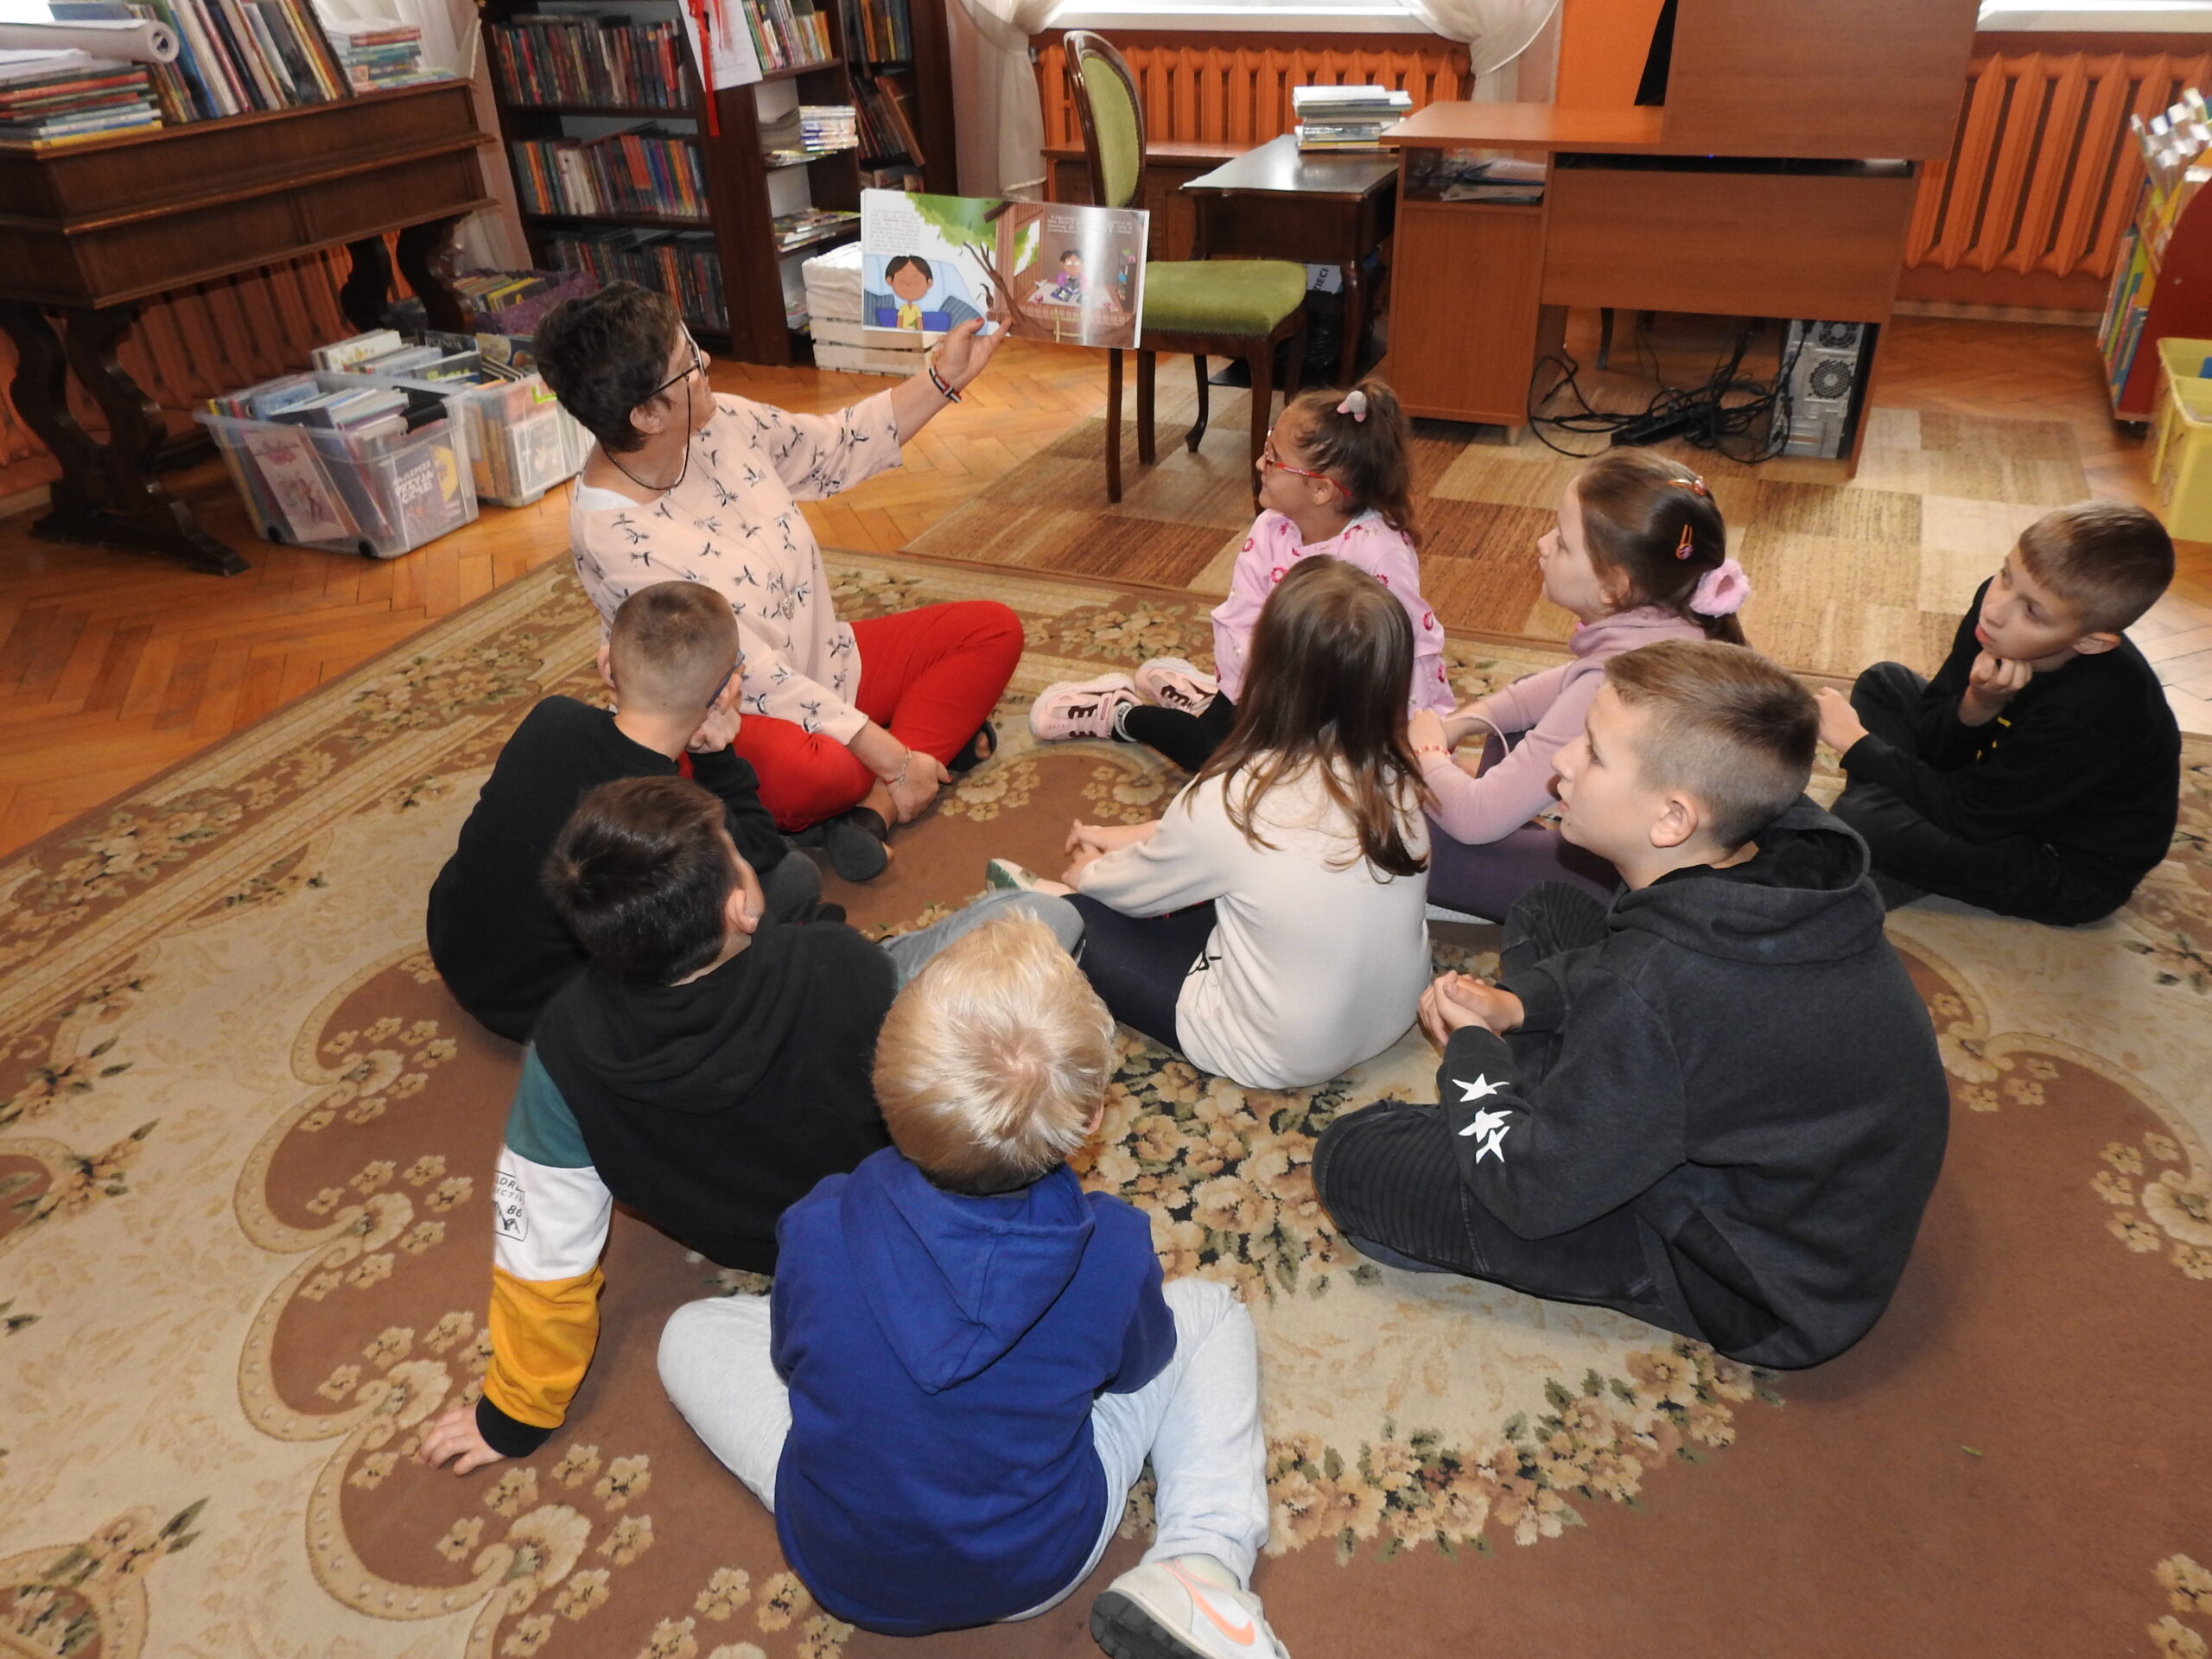 Grupa dzieci siedzi na dywanie. Jest  skierowana w stronę osoby dorosłej, która również siedzi na dywanie. Trzyma otwartą książkę wysoko w lewej ręce, tak by dzieci mogły zobaczyć ilustracje. W tle biurko, sekretarzyk oraz regały z książkami.